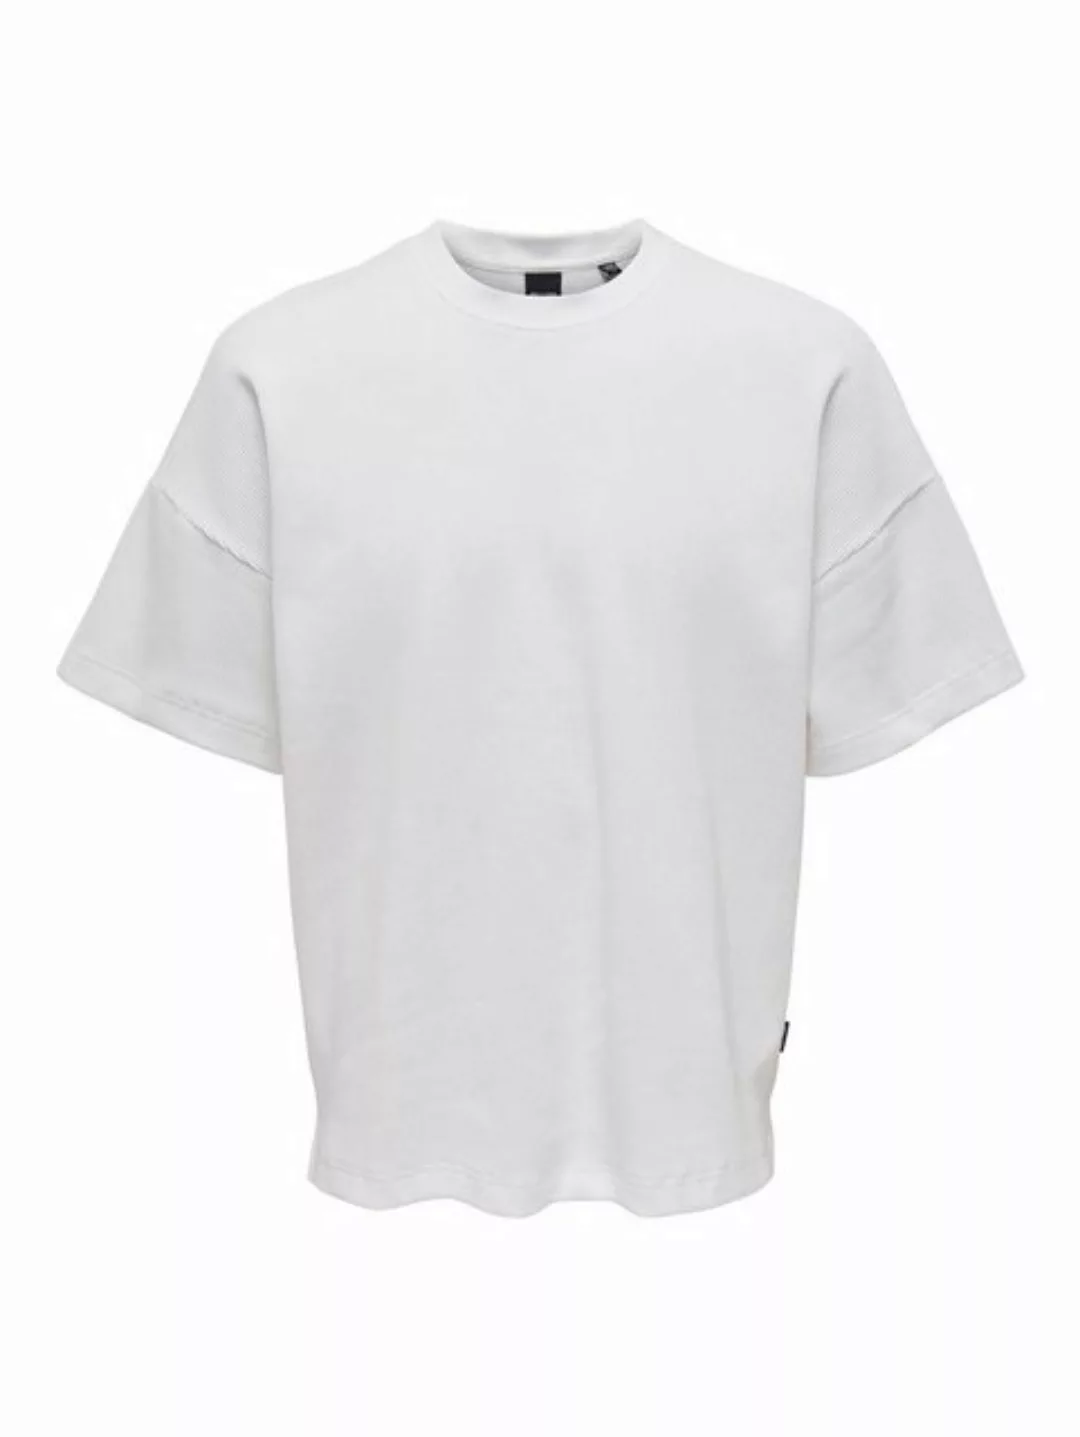 ONLY & SONS T-Shirt Weites Rundhals T-Shirt Kurzarm Basic Shirt ONSBERKELEY günstig online kaufen